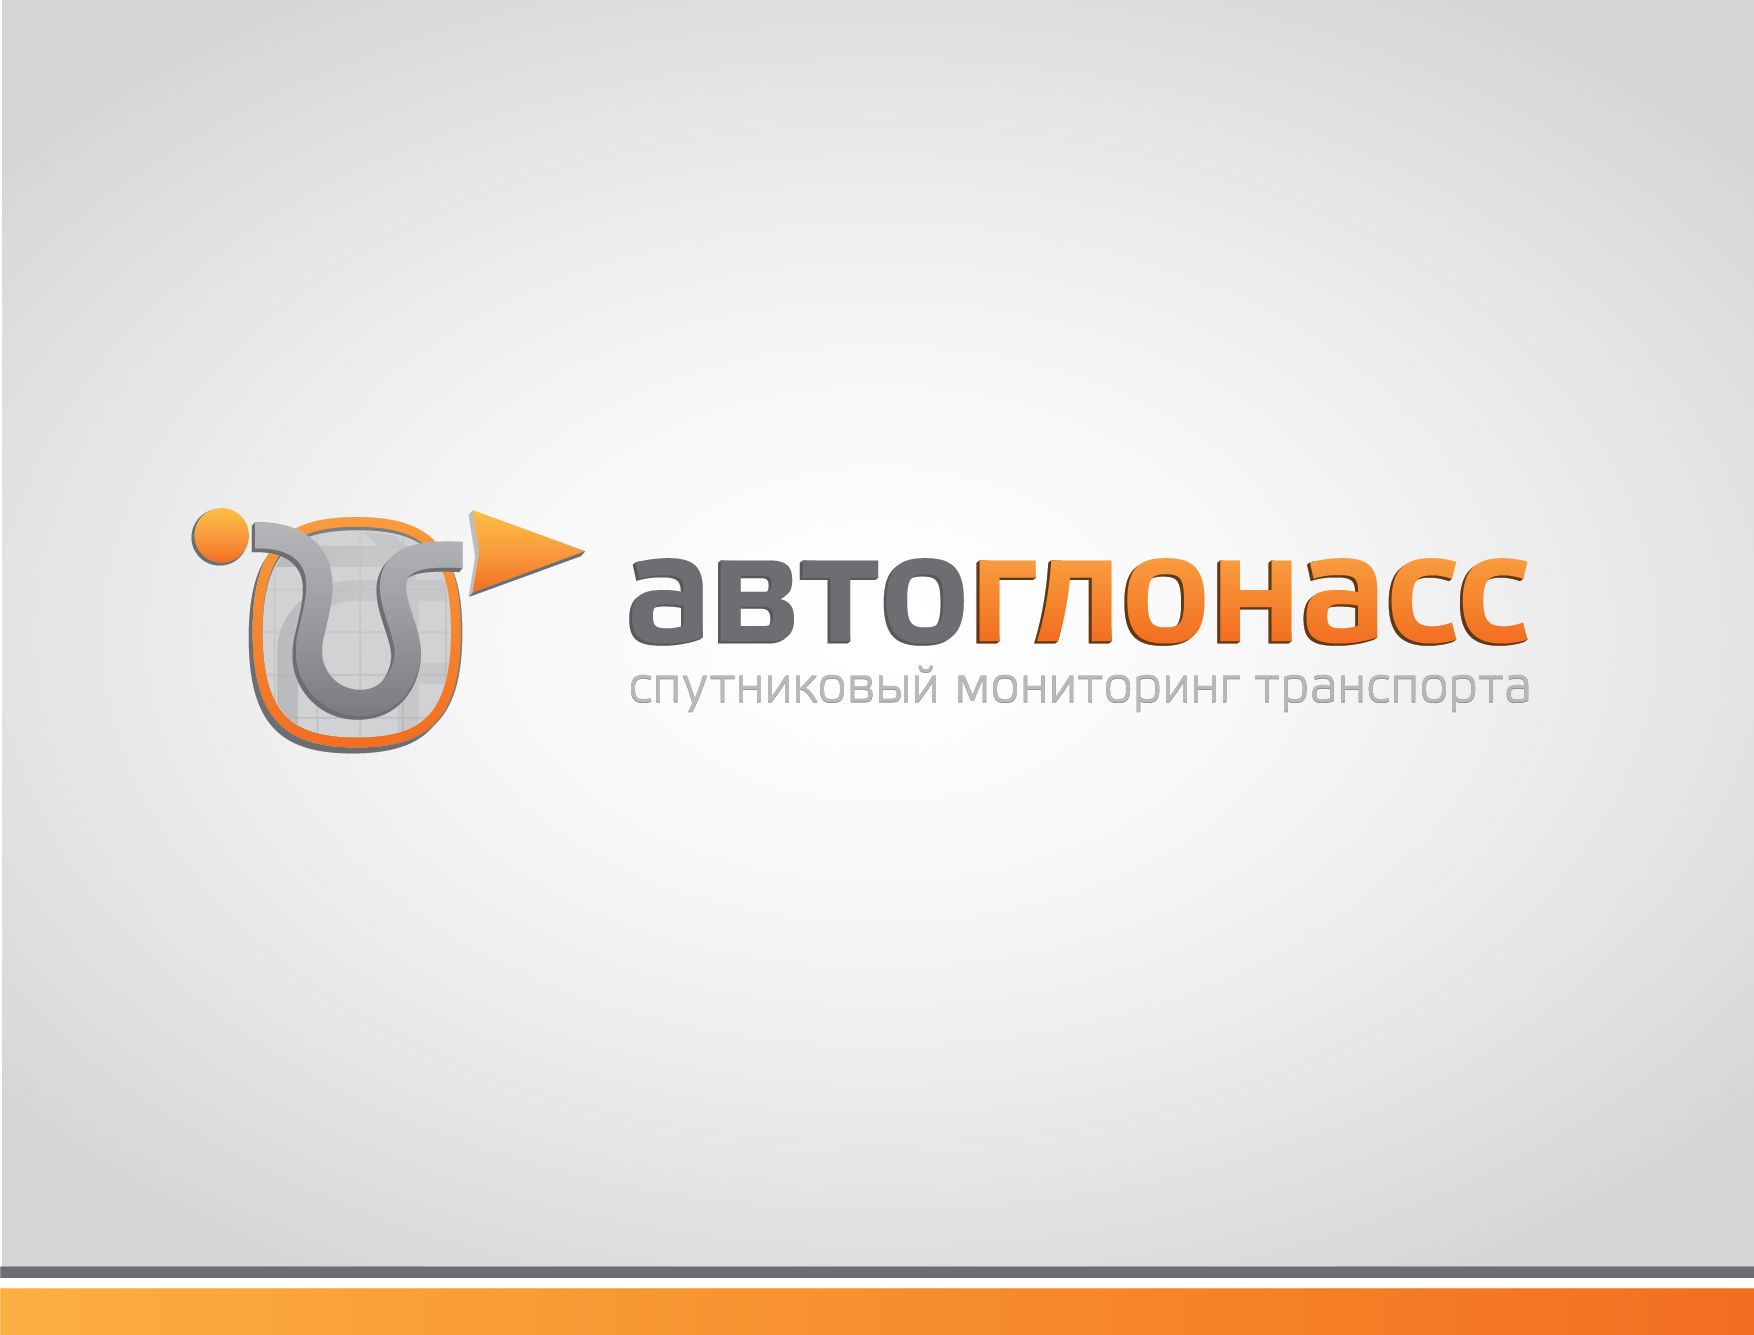 Логотип и фирменный стиль проекта АвтоГЛОНАСС - дизайнер Cammerariy